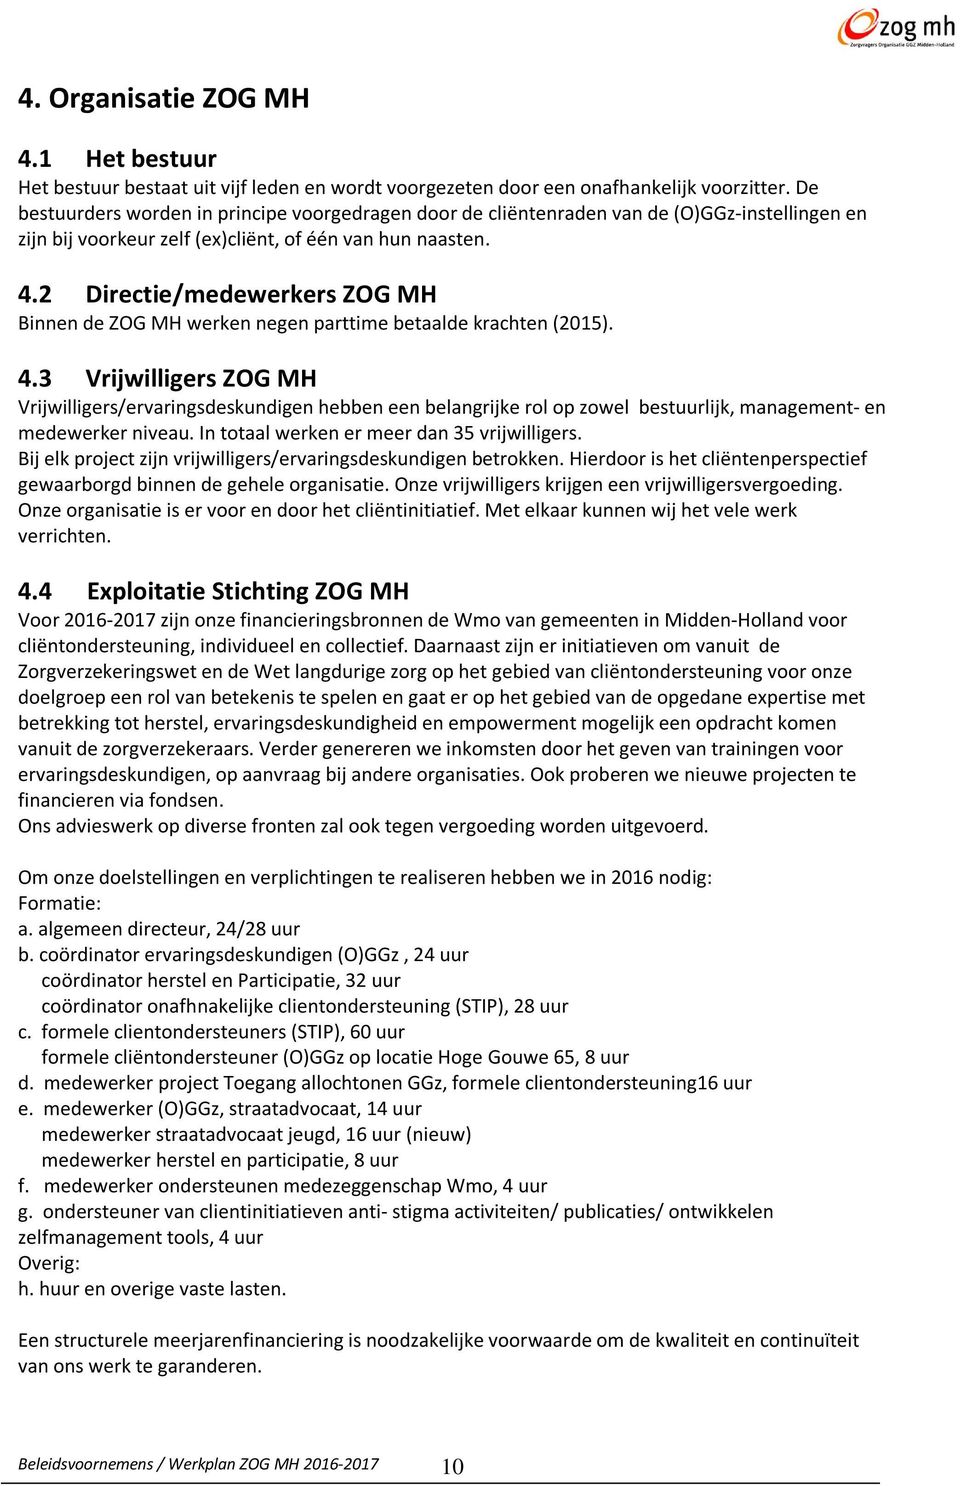 2 Directie/medewerkers ZOG MH Binnen de ZOG MH werken negen parttime betaalde krachten (2015). 4.